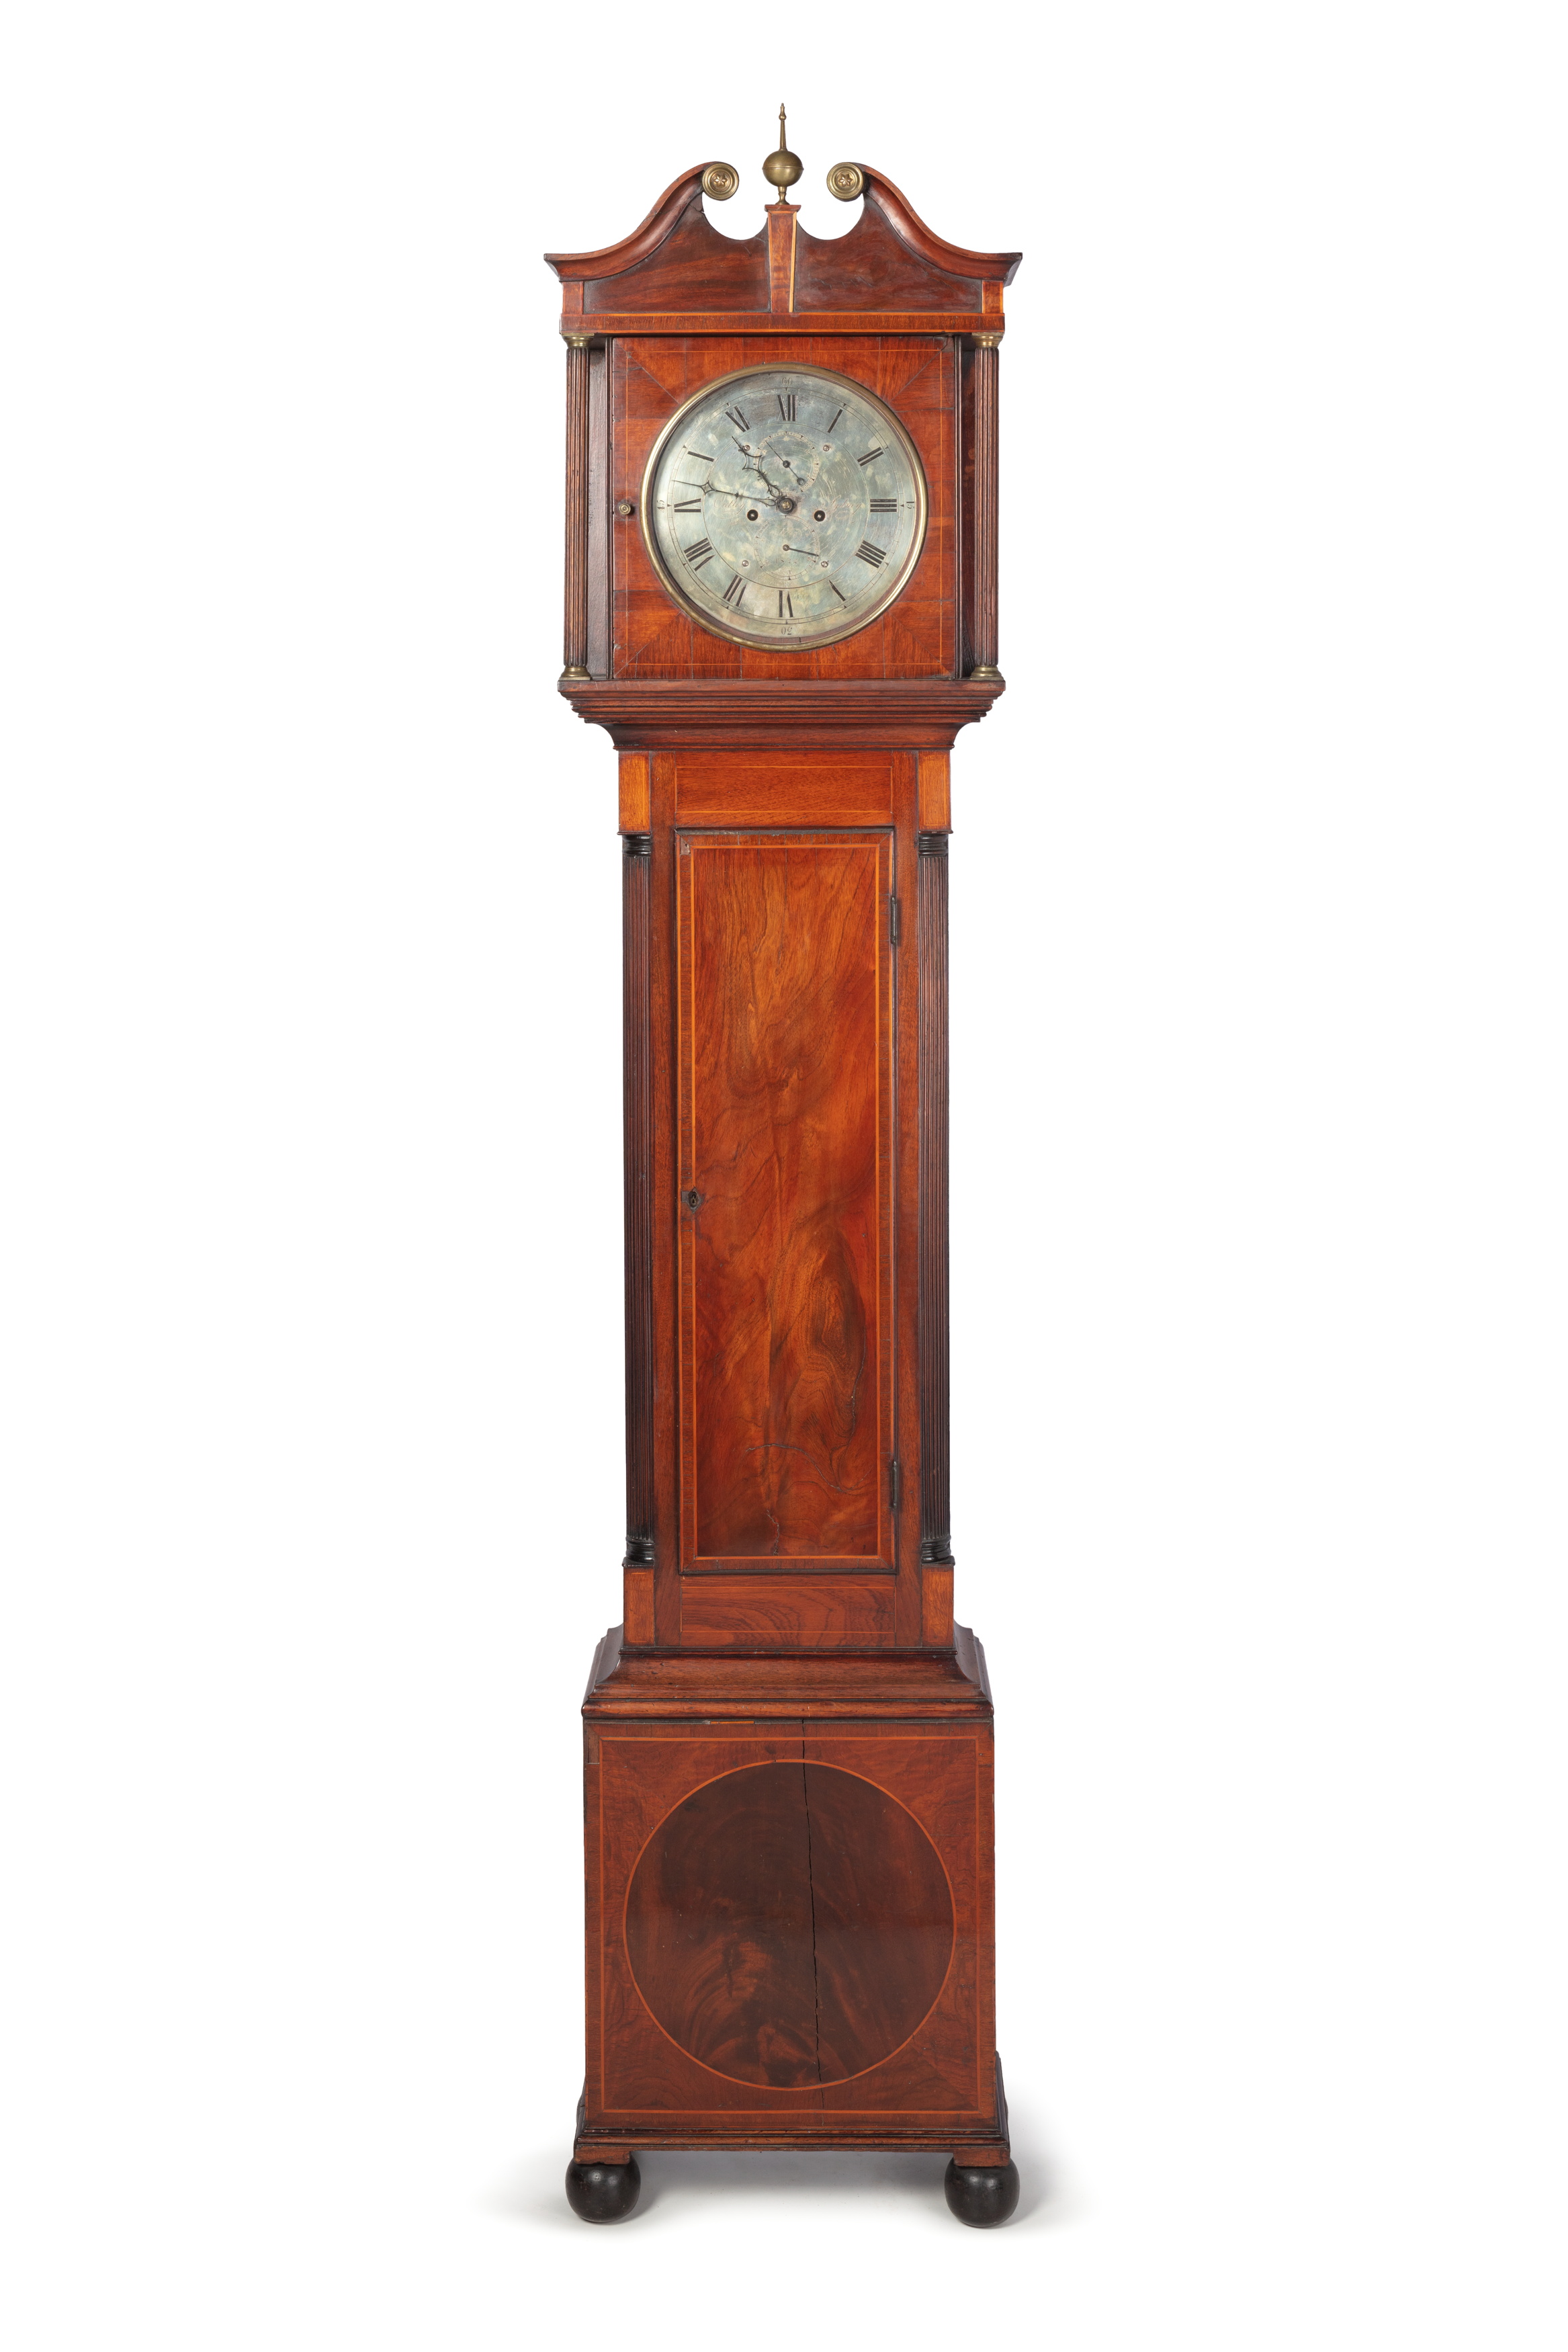 Longcase clock by James Oatley